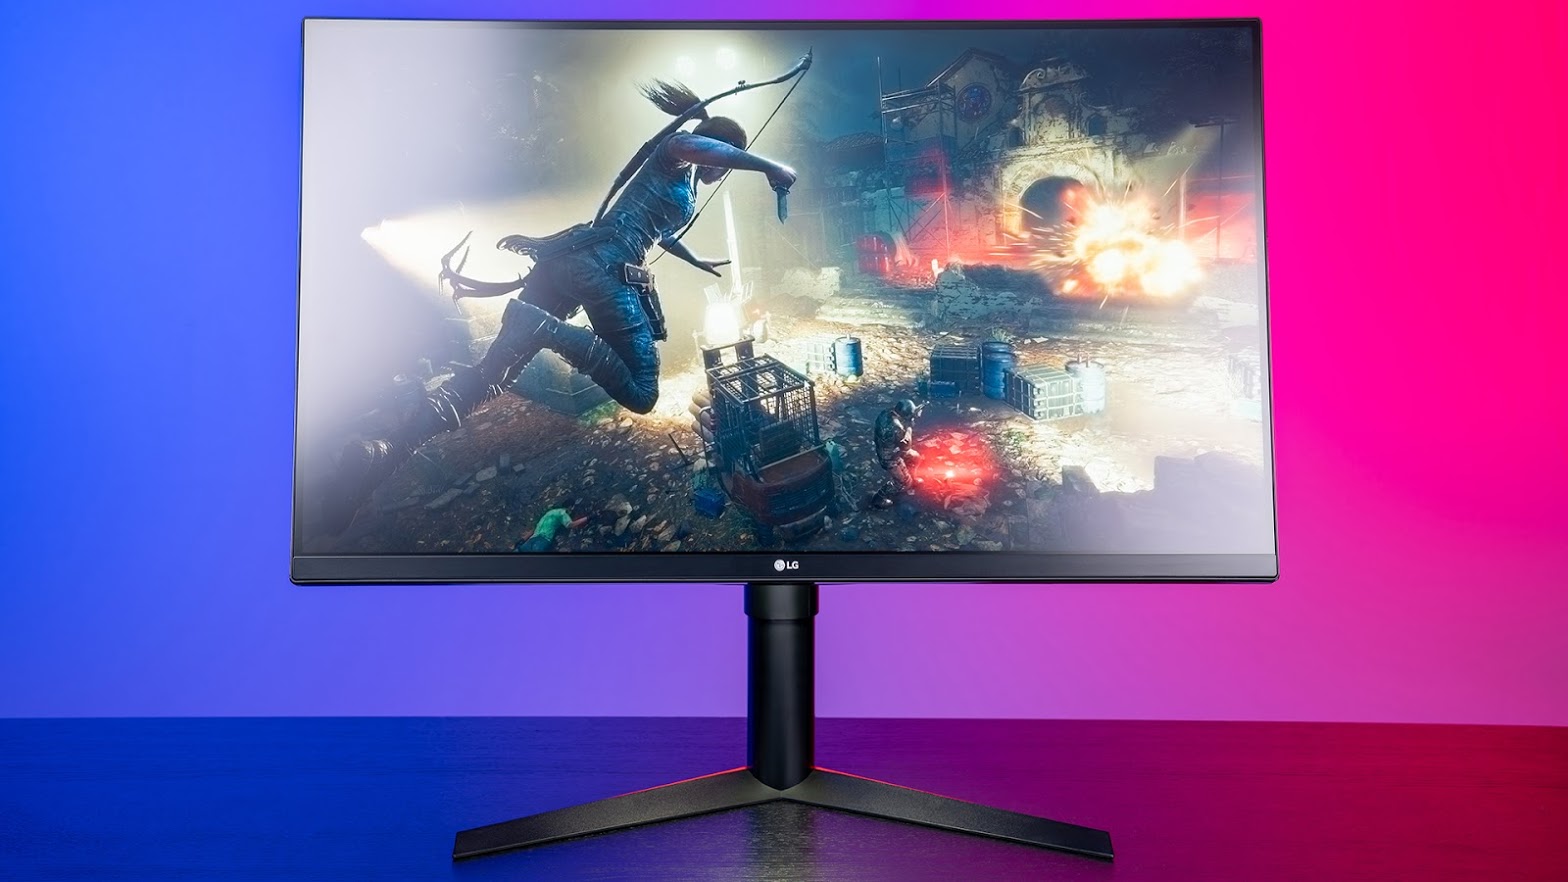 LG gaming monitor facing forward with a screenshot of Tomb Raider on screen